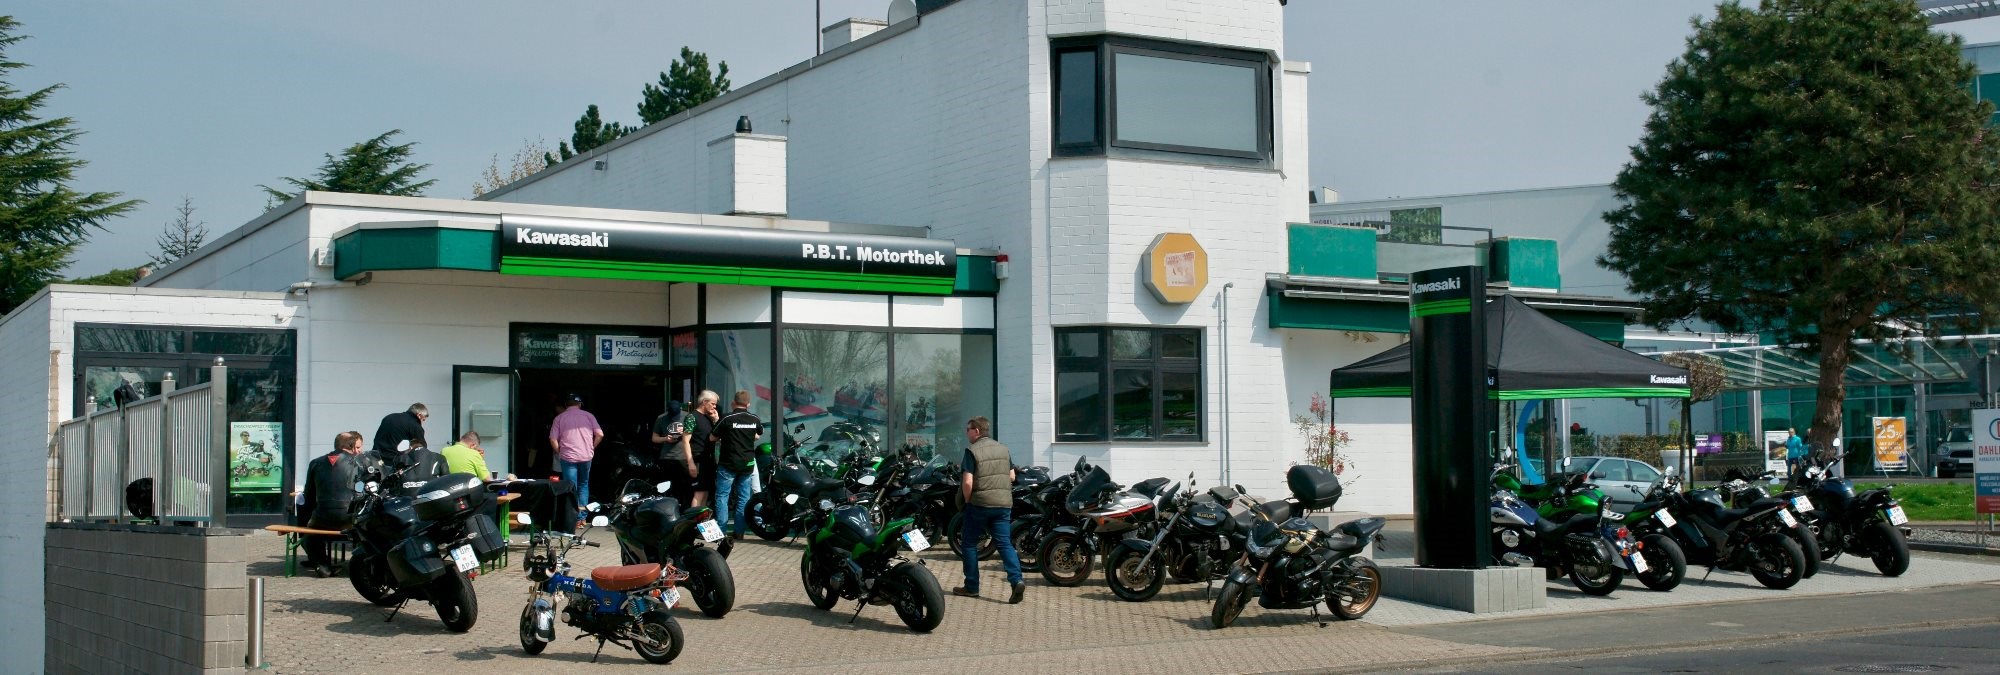 Die PBT Motorthek in Bergheim-Zieverich